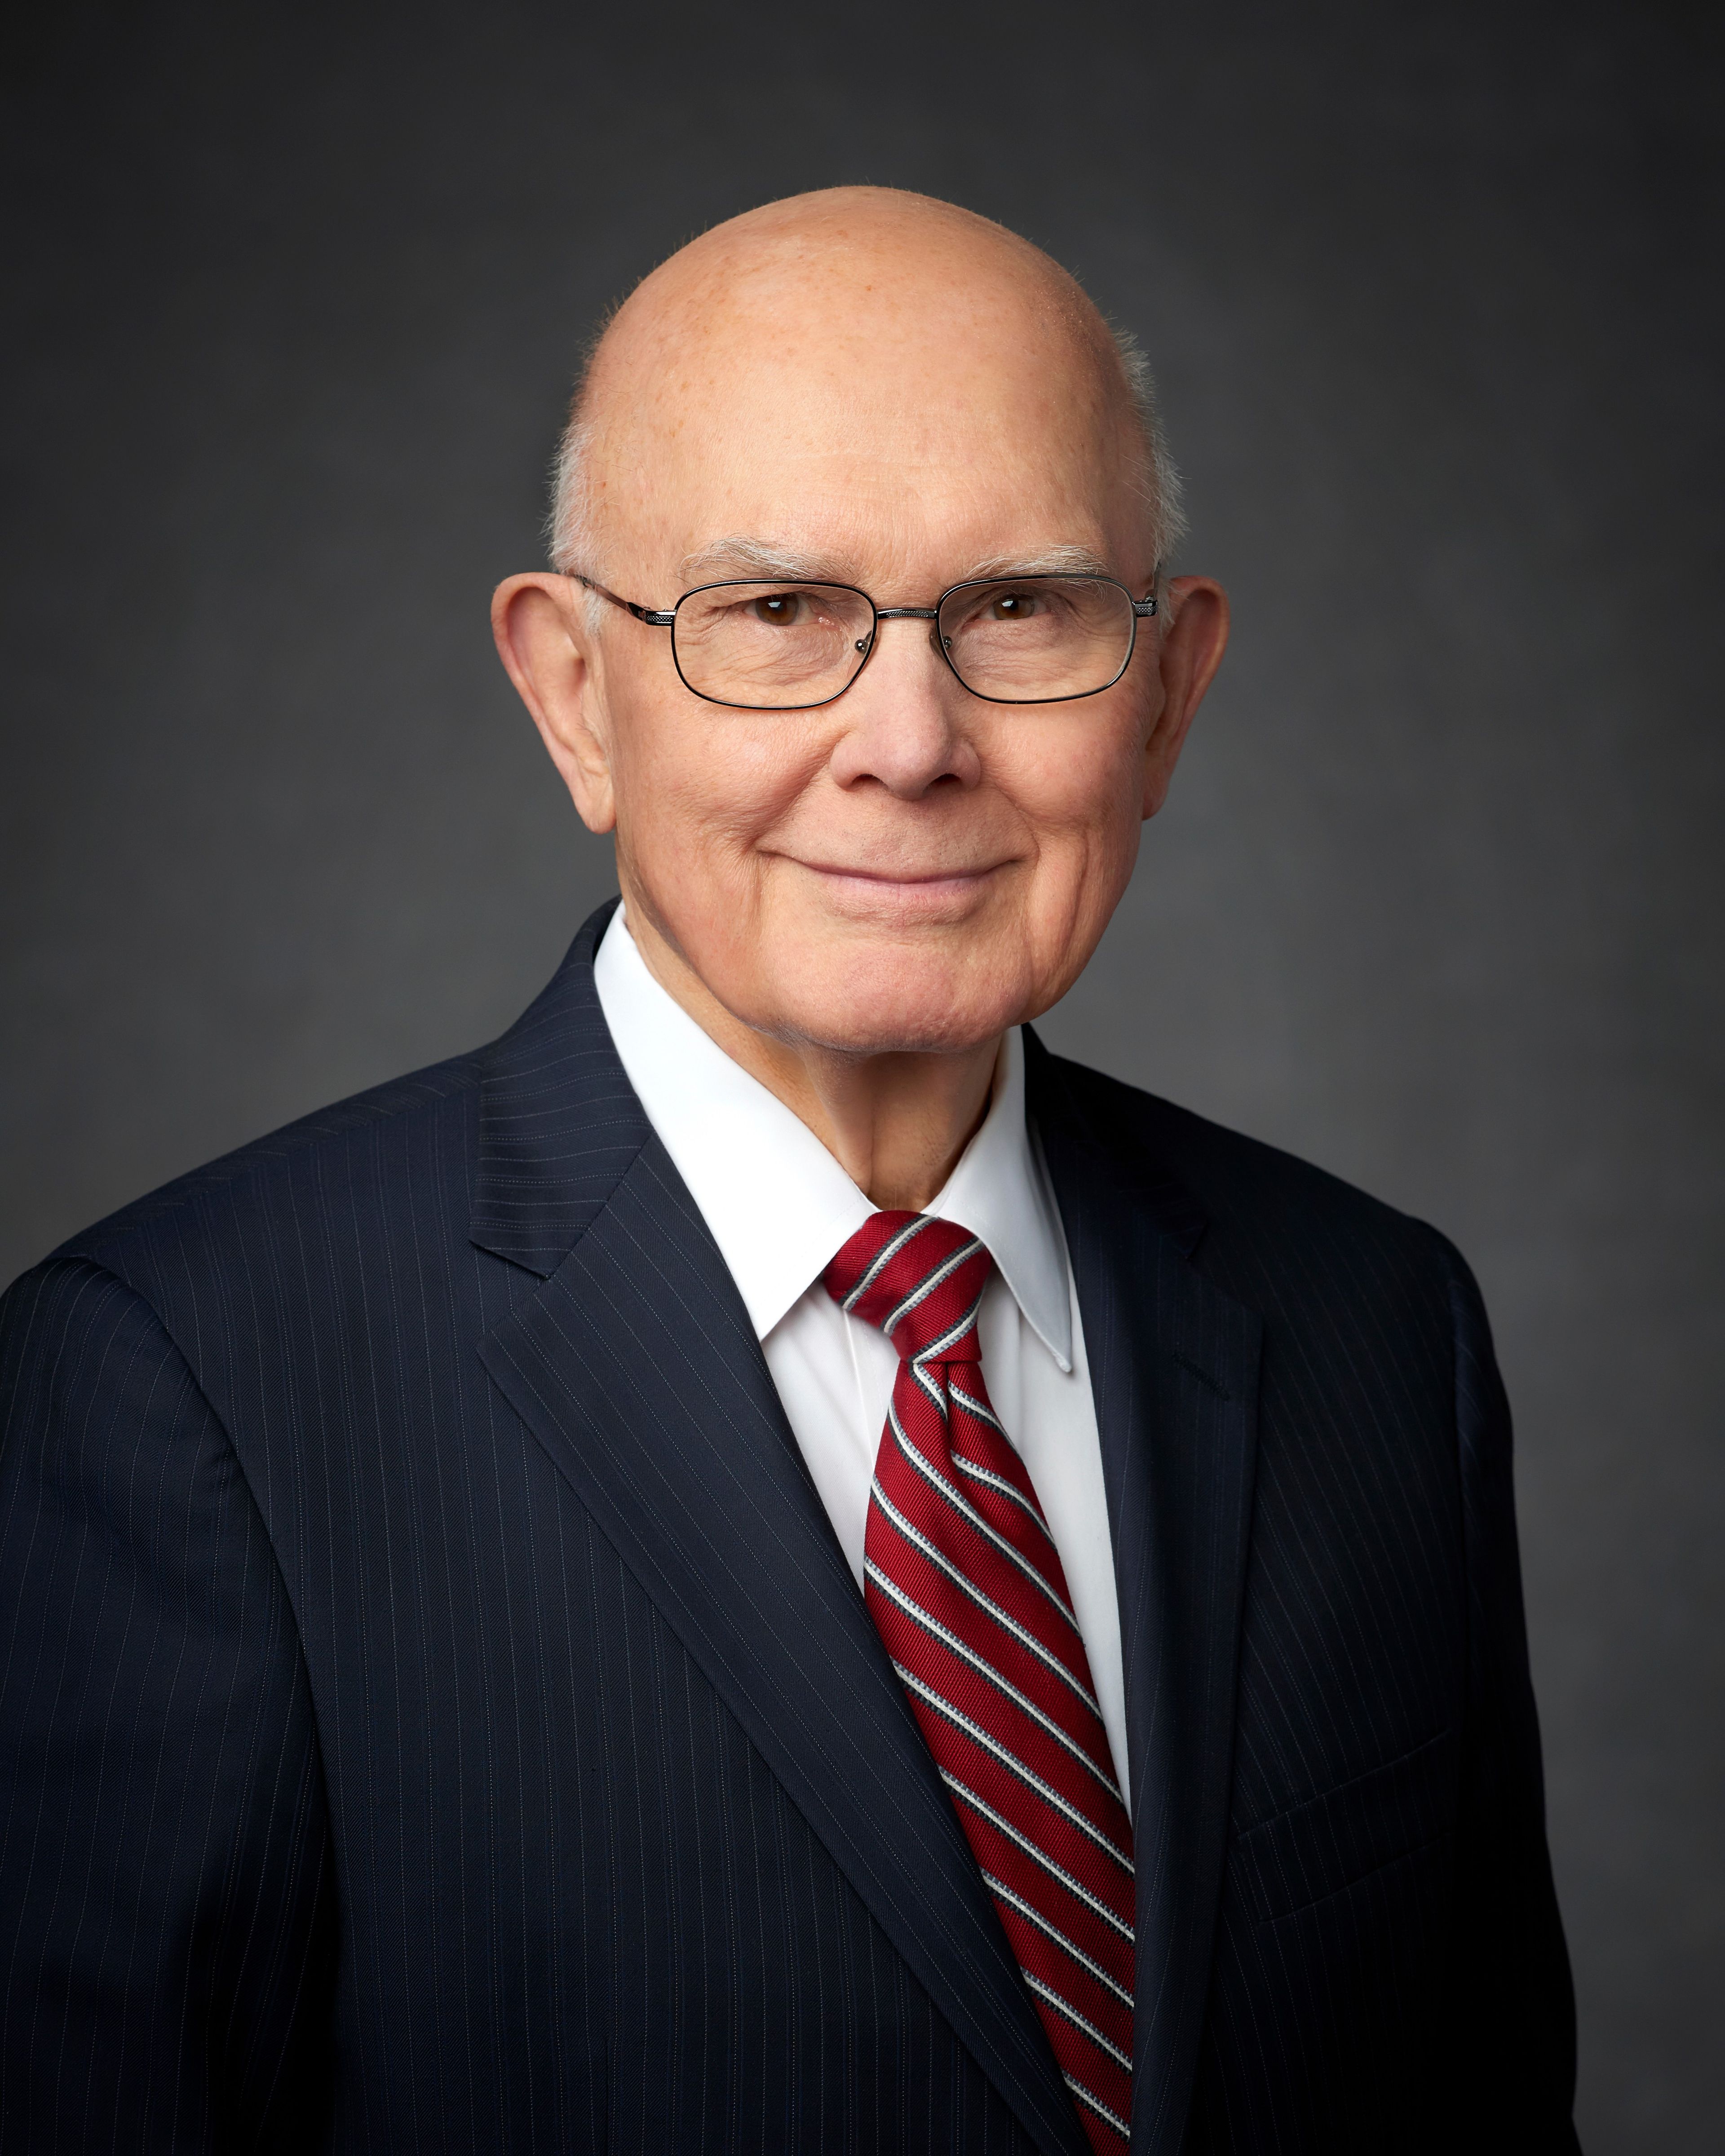 Präsident Dallin H. Oaks, Erster Ratgeber in der Ersten Präsidentschaft der Kirche Jesu Christi der Heiligen der Letzten Tage; offizielles Porträtfoto